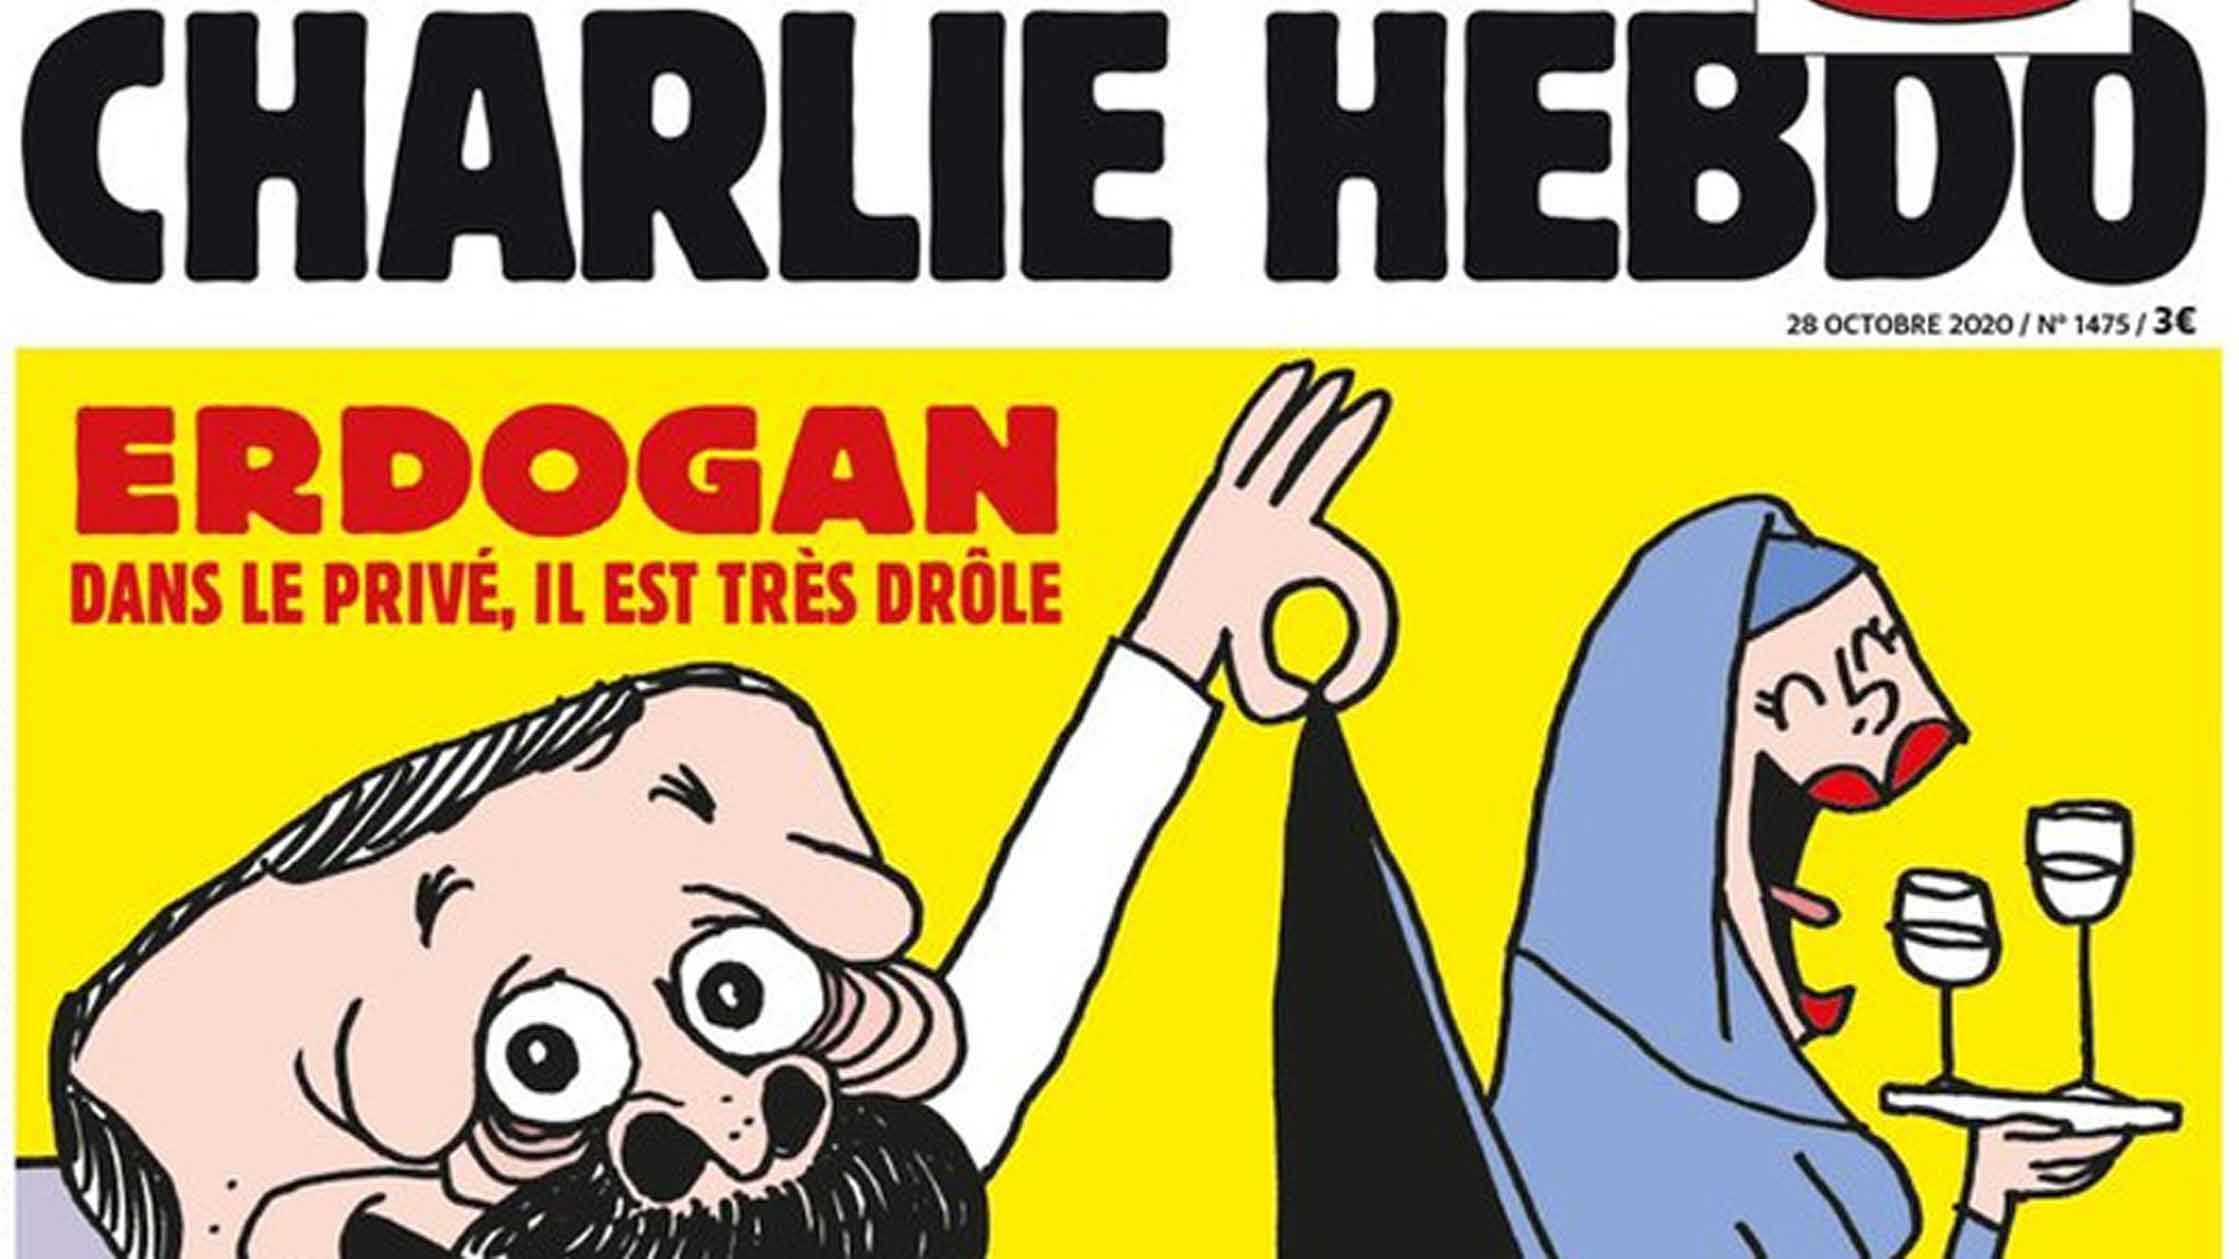 Из-за публикации французского журнала будут предприняты дипломатические и юридические шаги, заявили в аппарате турецкого лидера Изображение: © Charlie Hebdo